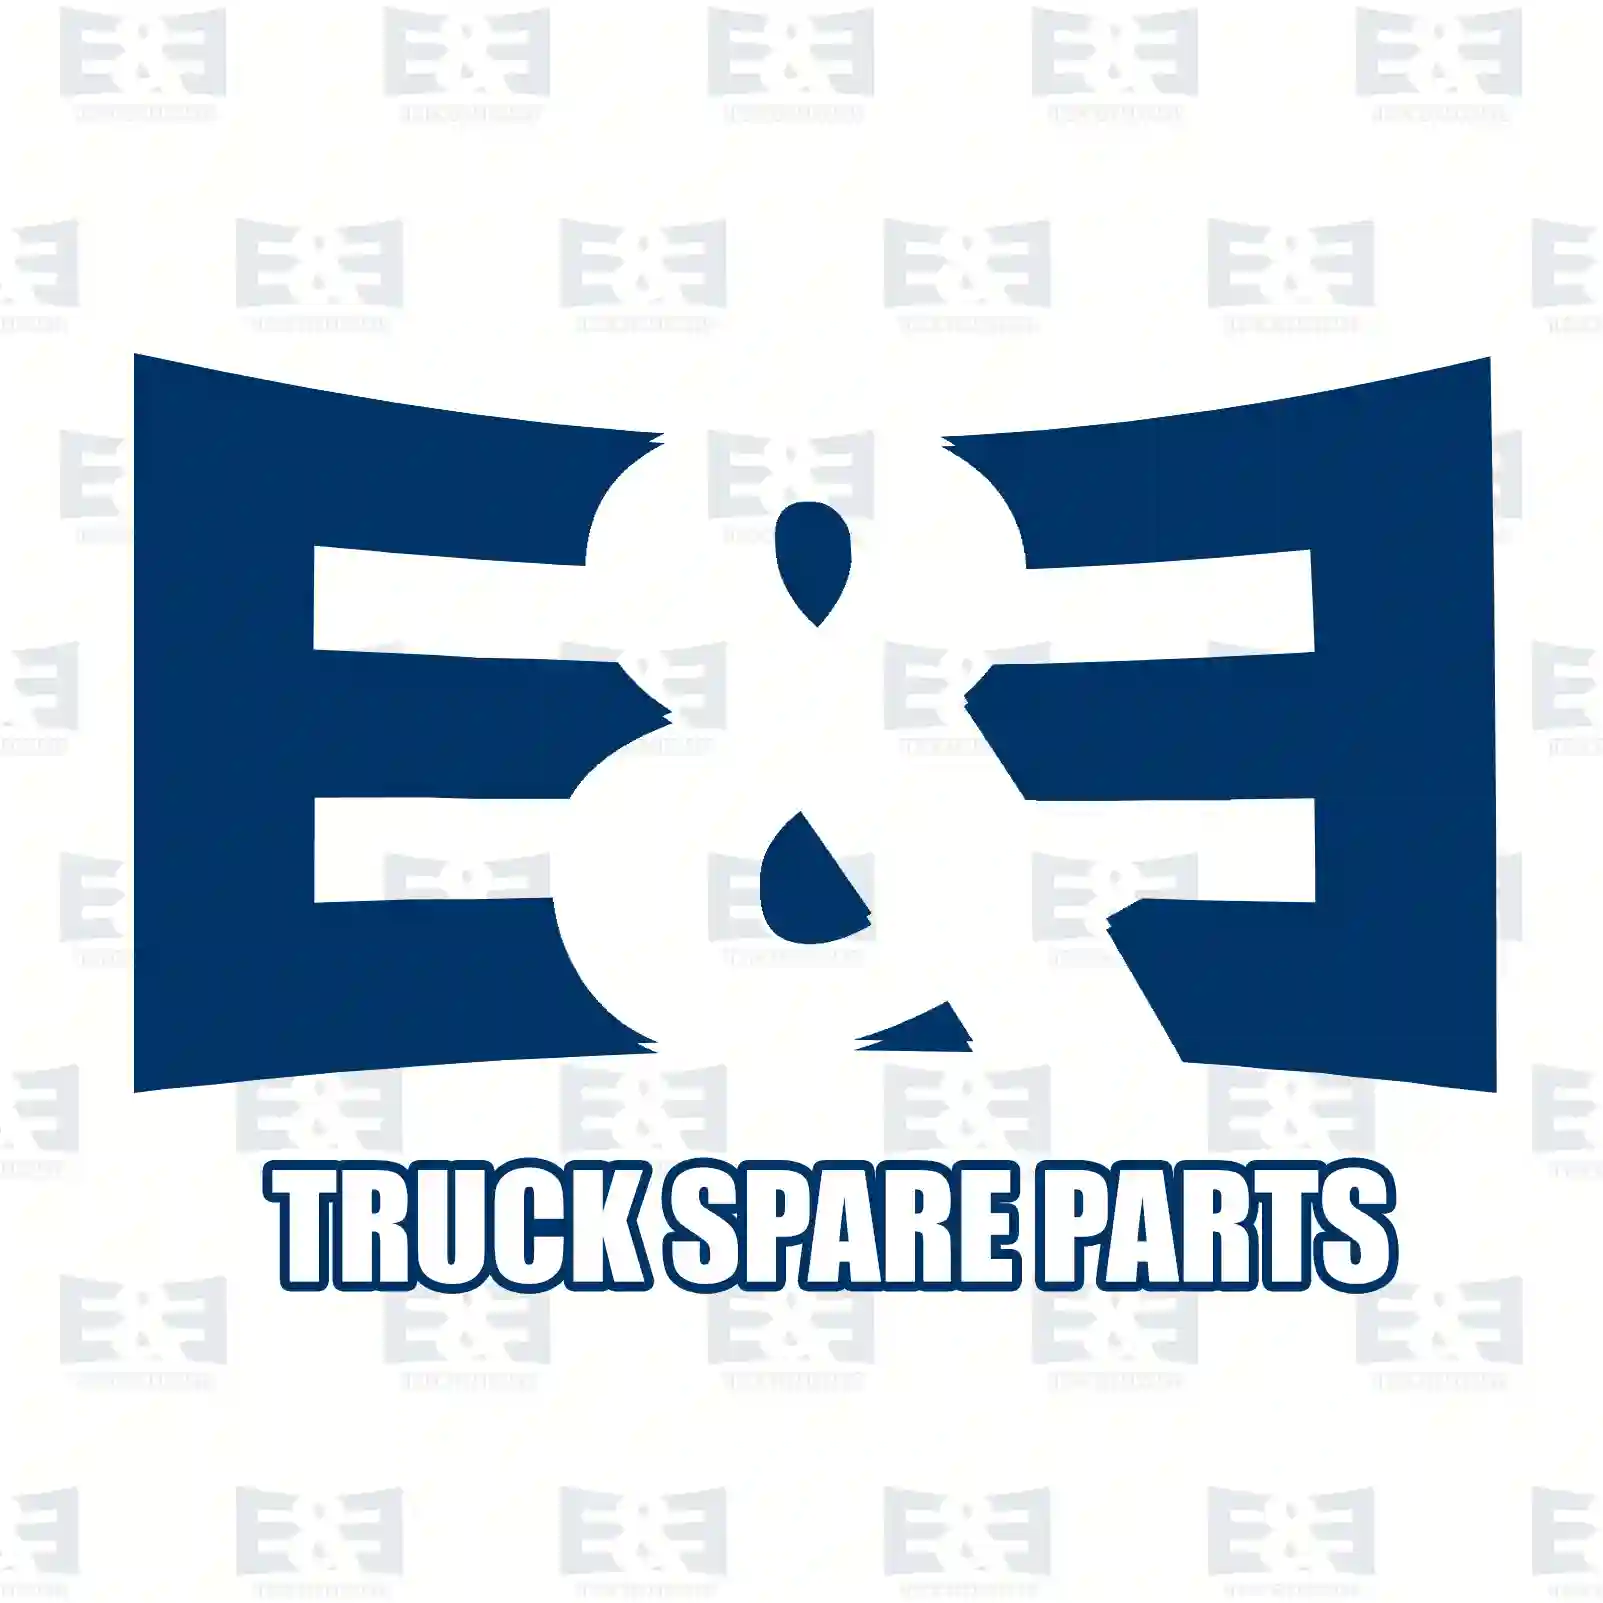 Air filter, 2E2204728, 40946804 ||  2E2204728 E&E Truck Spare Parts | Truck Spare Parts, Auotomotive Spare Parts Air filter, 2E2204728, 40946804 ||  2E2204728 E&E Truck Spare Parts | Truck Spare Parts, Auotomotive Spare Parts